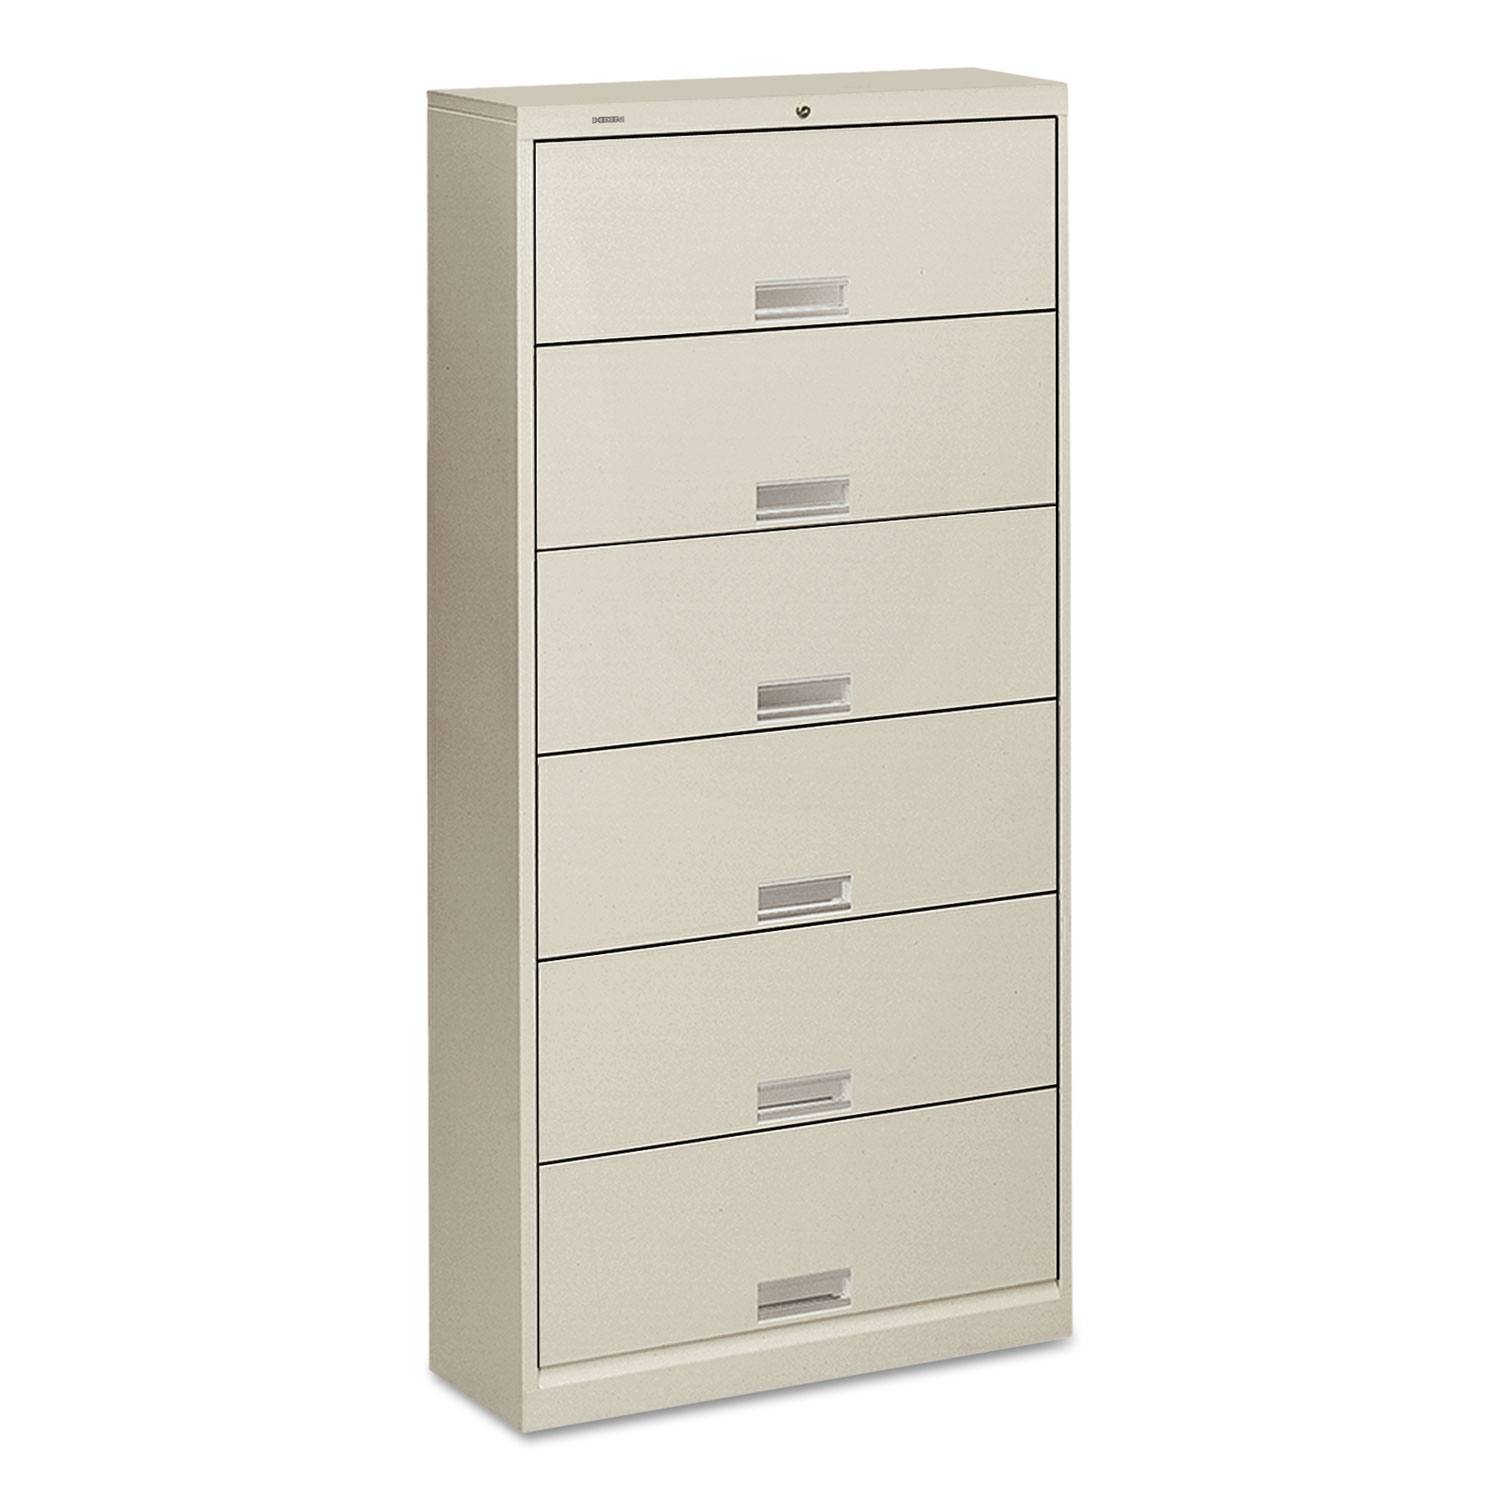 600 Series Six-Shelf Steel Receding Door File, 36 x 13-3/4 x 75-7/8,Light Gray